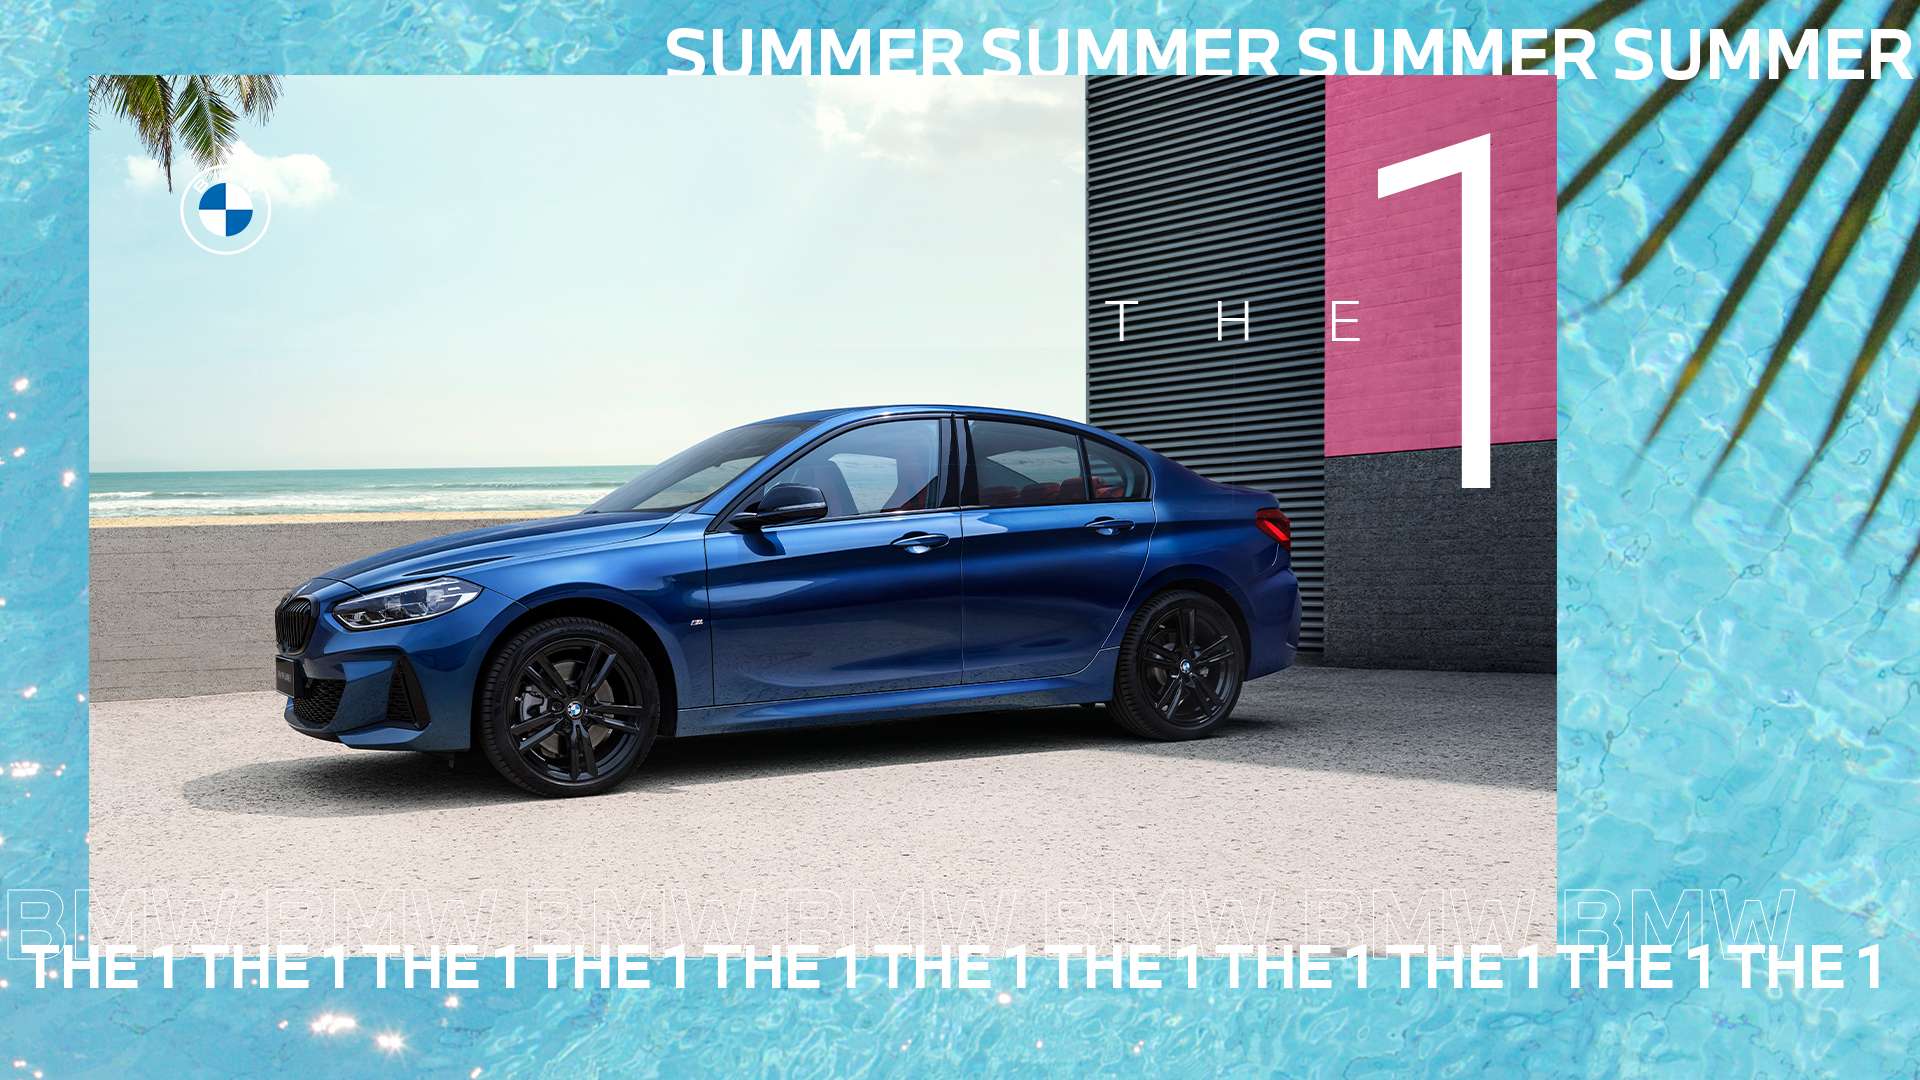 BMW元气盛夏 如皋万达 欢迎来撩